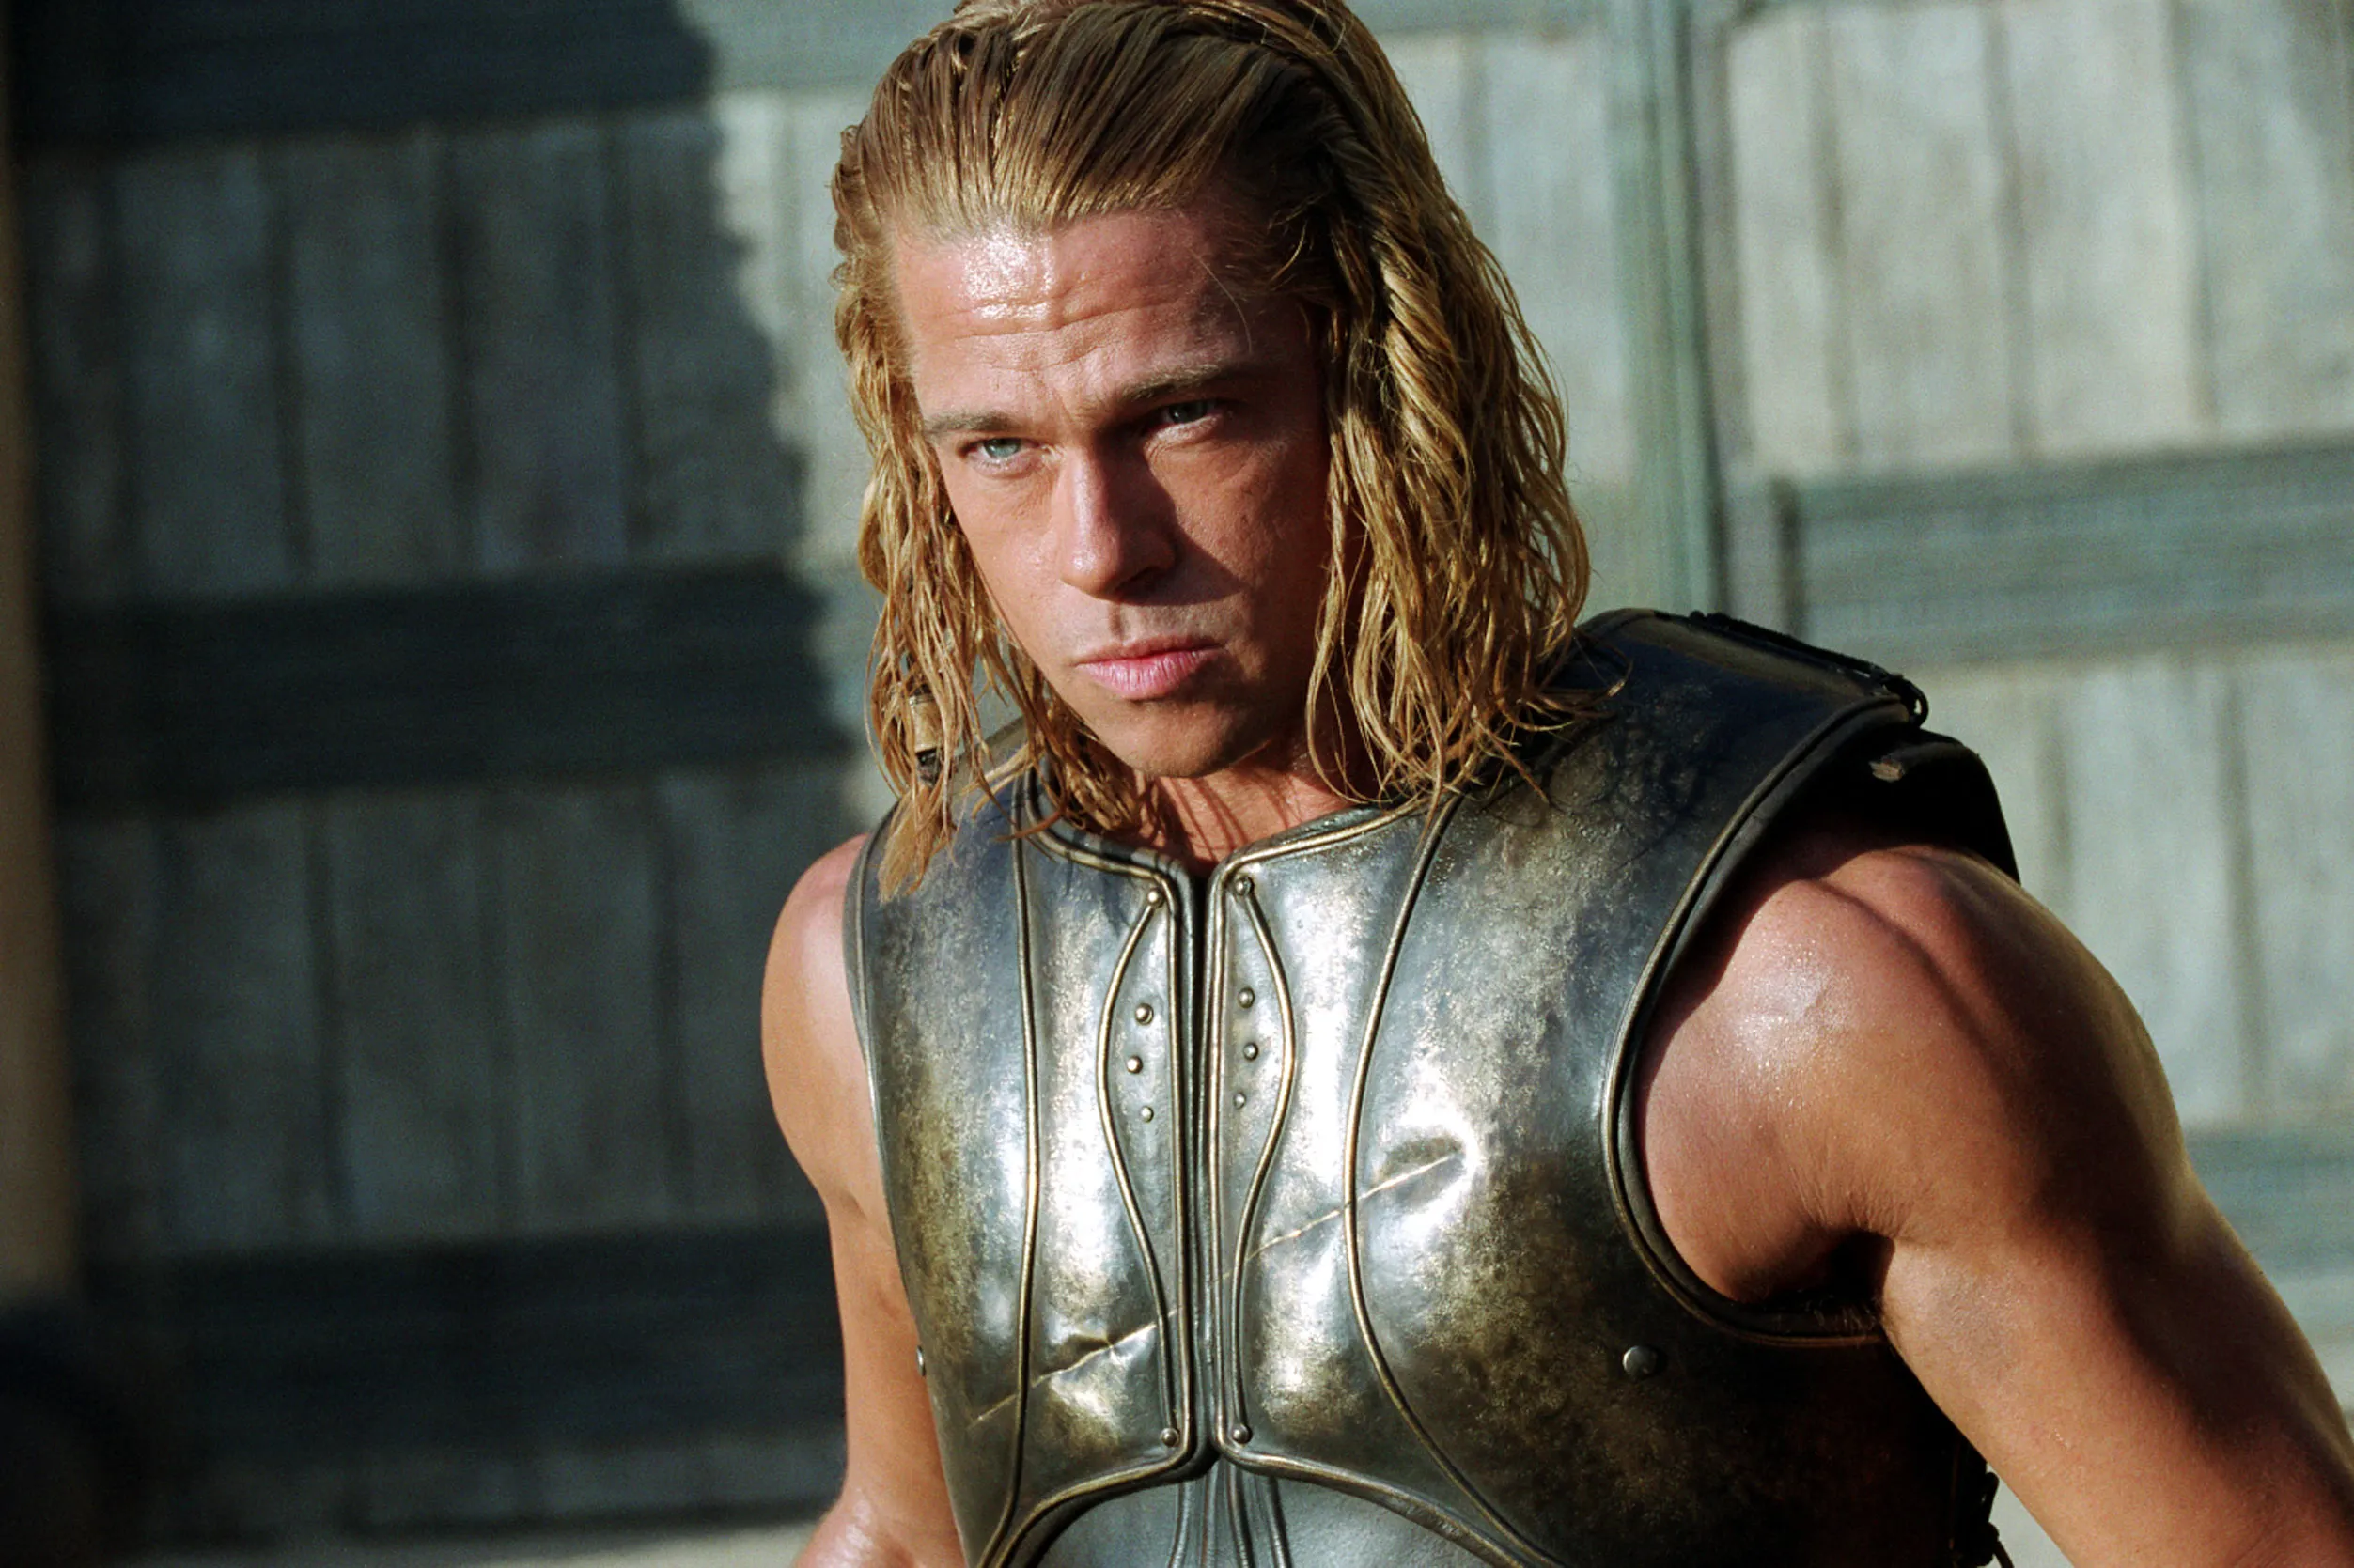 Brad Pitt as Achilles in troy